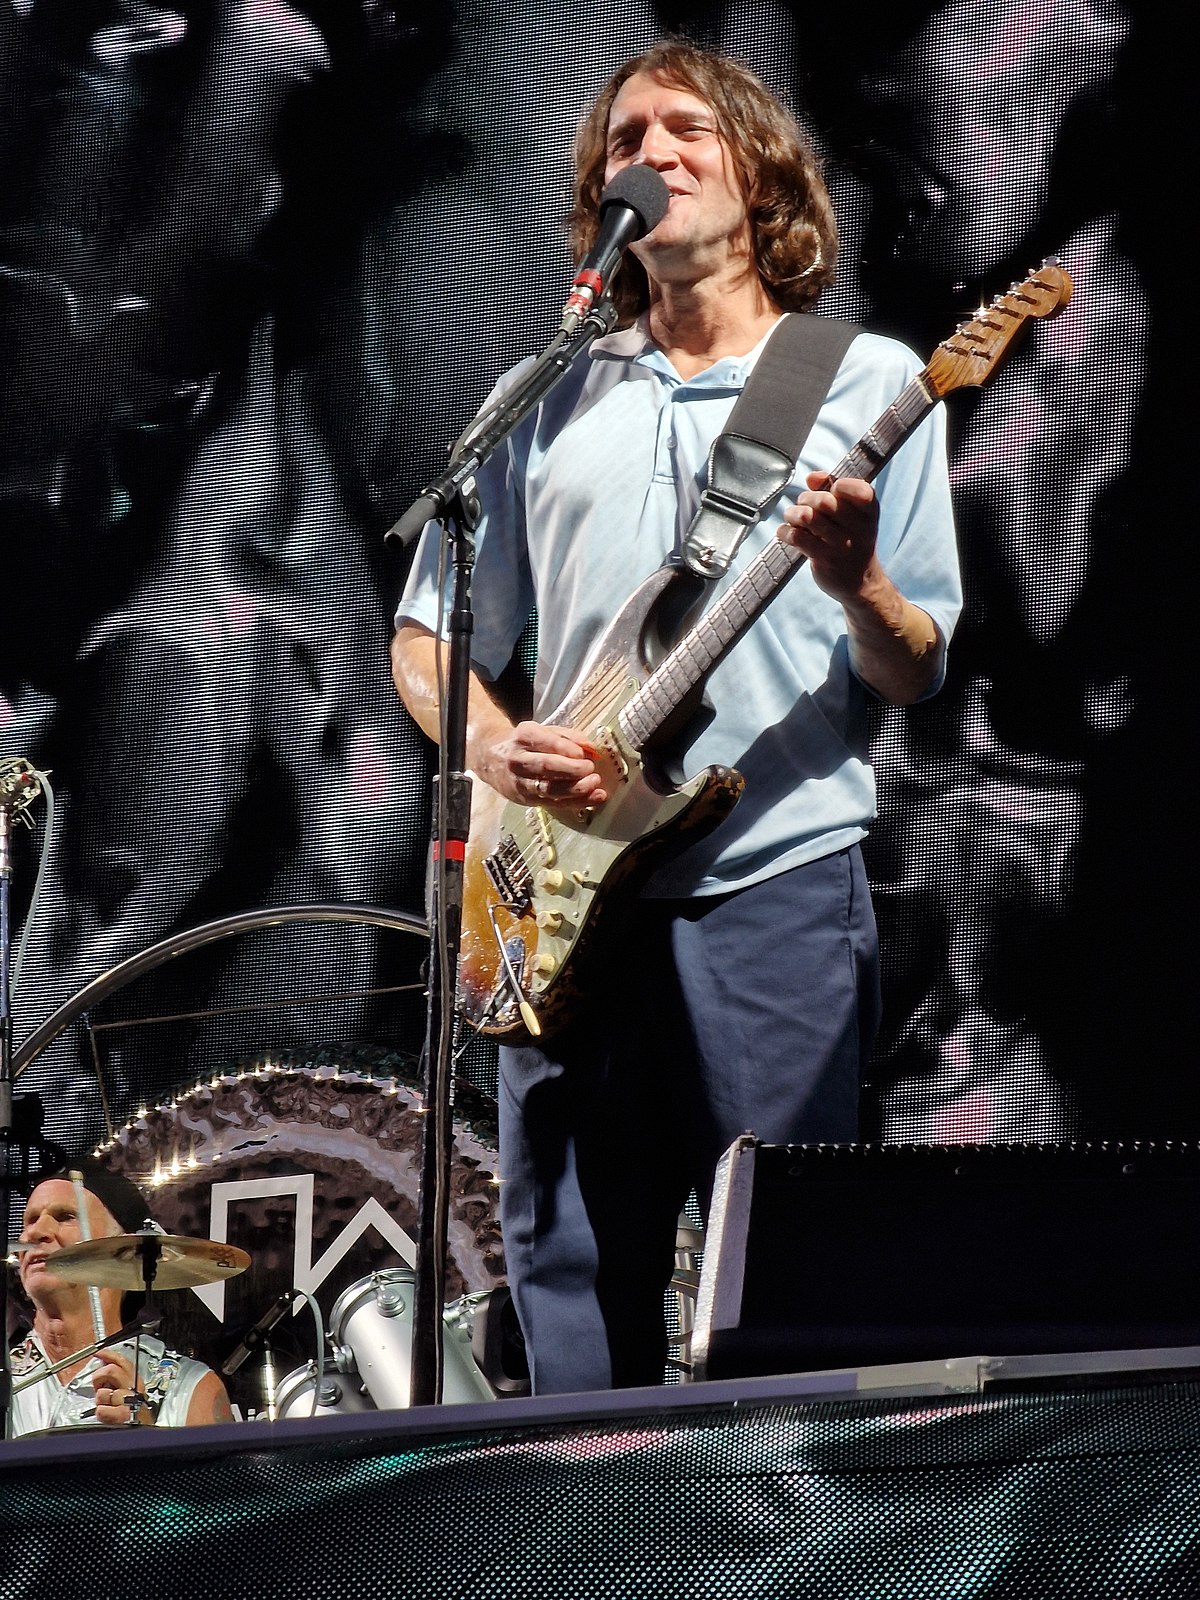 Hãy xem hình của John Frusciante - một người nghệ sĩ guitar tài năng, anh là cựu thành viên của ban nhạc Red Hot Chili Peppers và đã có những cống hiến đáng kinh ngạc cho âm nhạc rock. Đón xem hình ảnh của anh ta và cảm nhận sức mạnh âm nhạc mà anh đã tạo ra trong suốt sự nghiệp của mình.